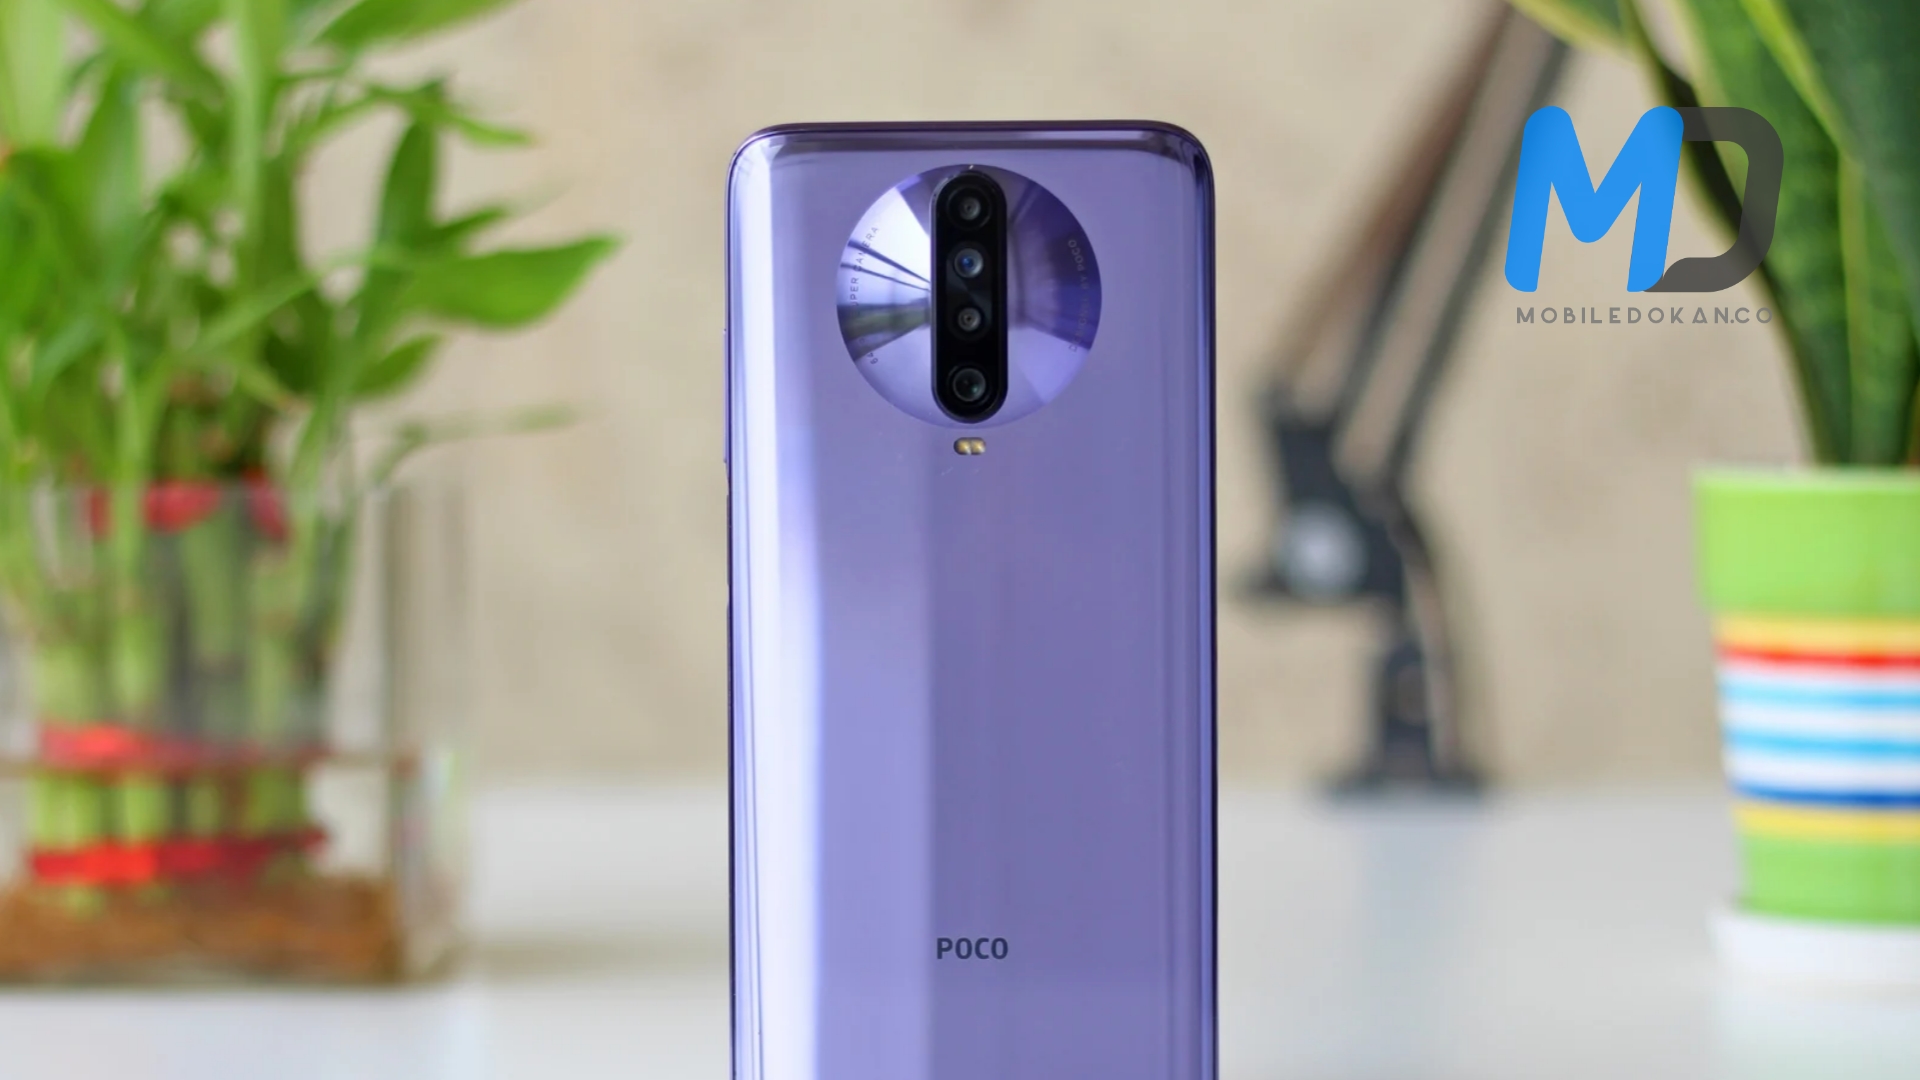 POCO X2 got MIUI 12.5 update in India finally